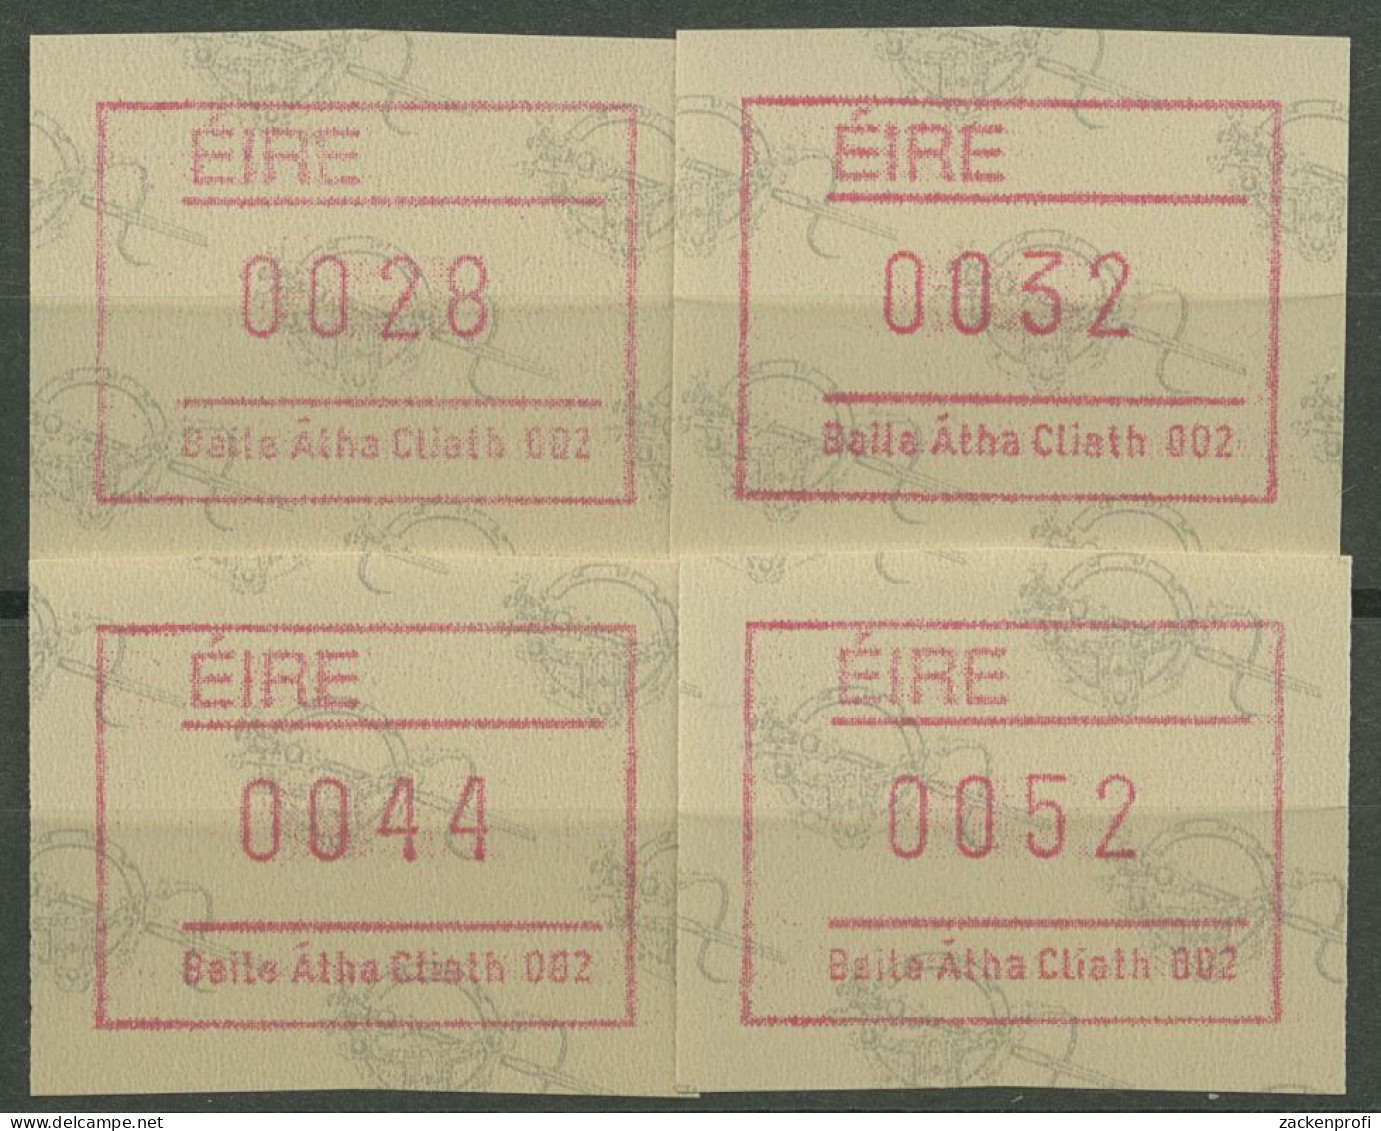 Irland Automatenmarken 1992 Satz 4 Werte Automat 002 ATM 4.2 S2 Postfrisch - Frankeervignetten (Frama)